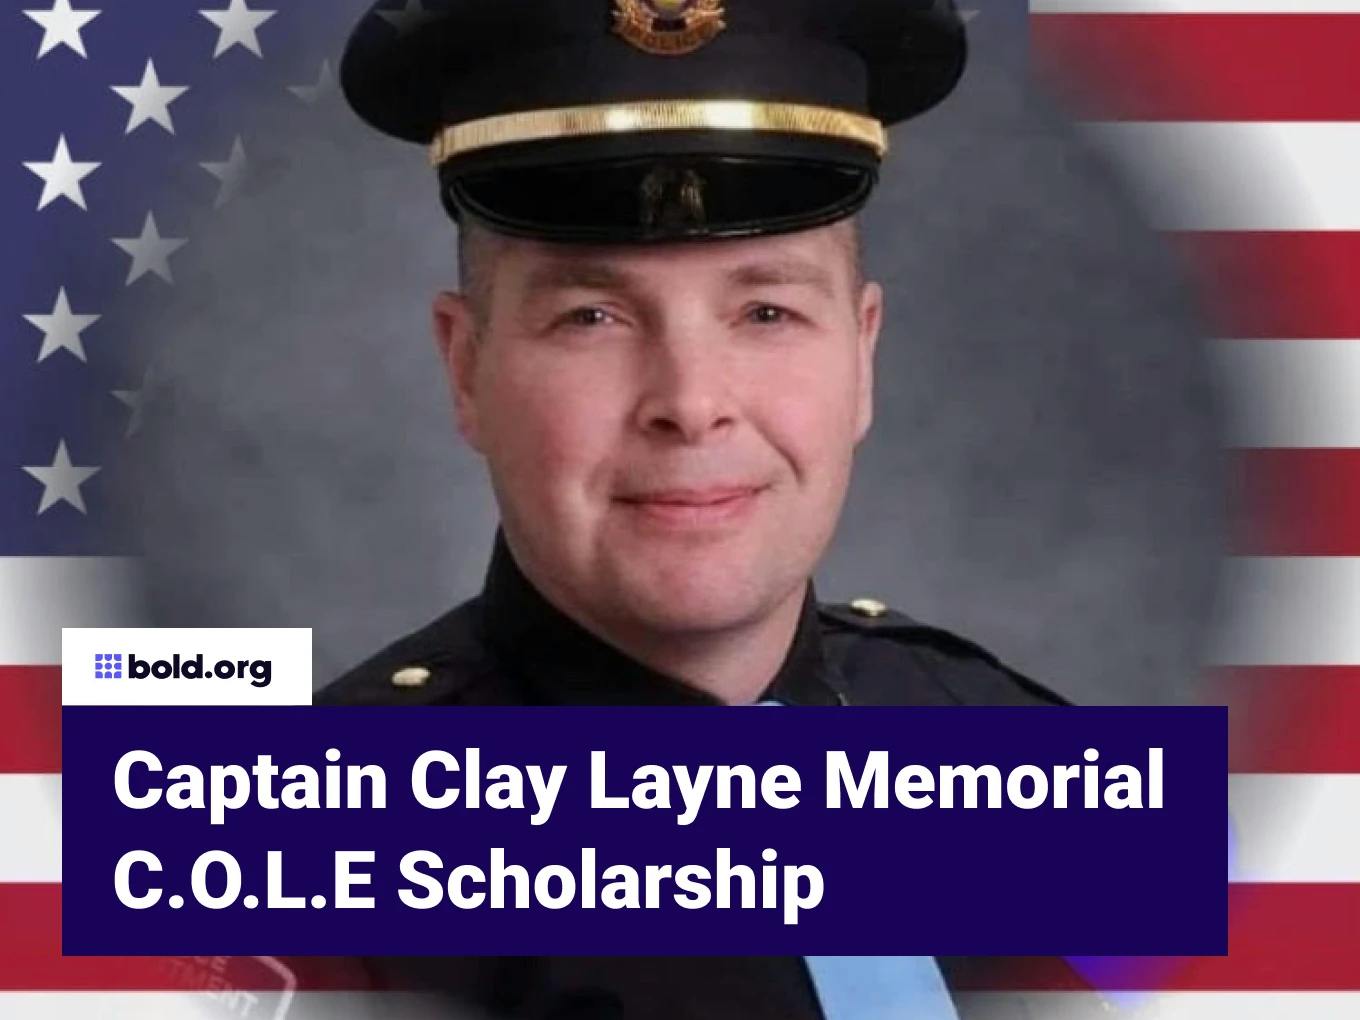 Captain Clay Layne Memorial C.O.L.E Scholarship